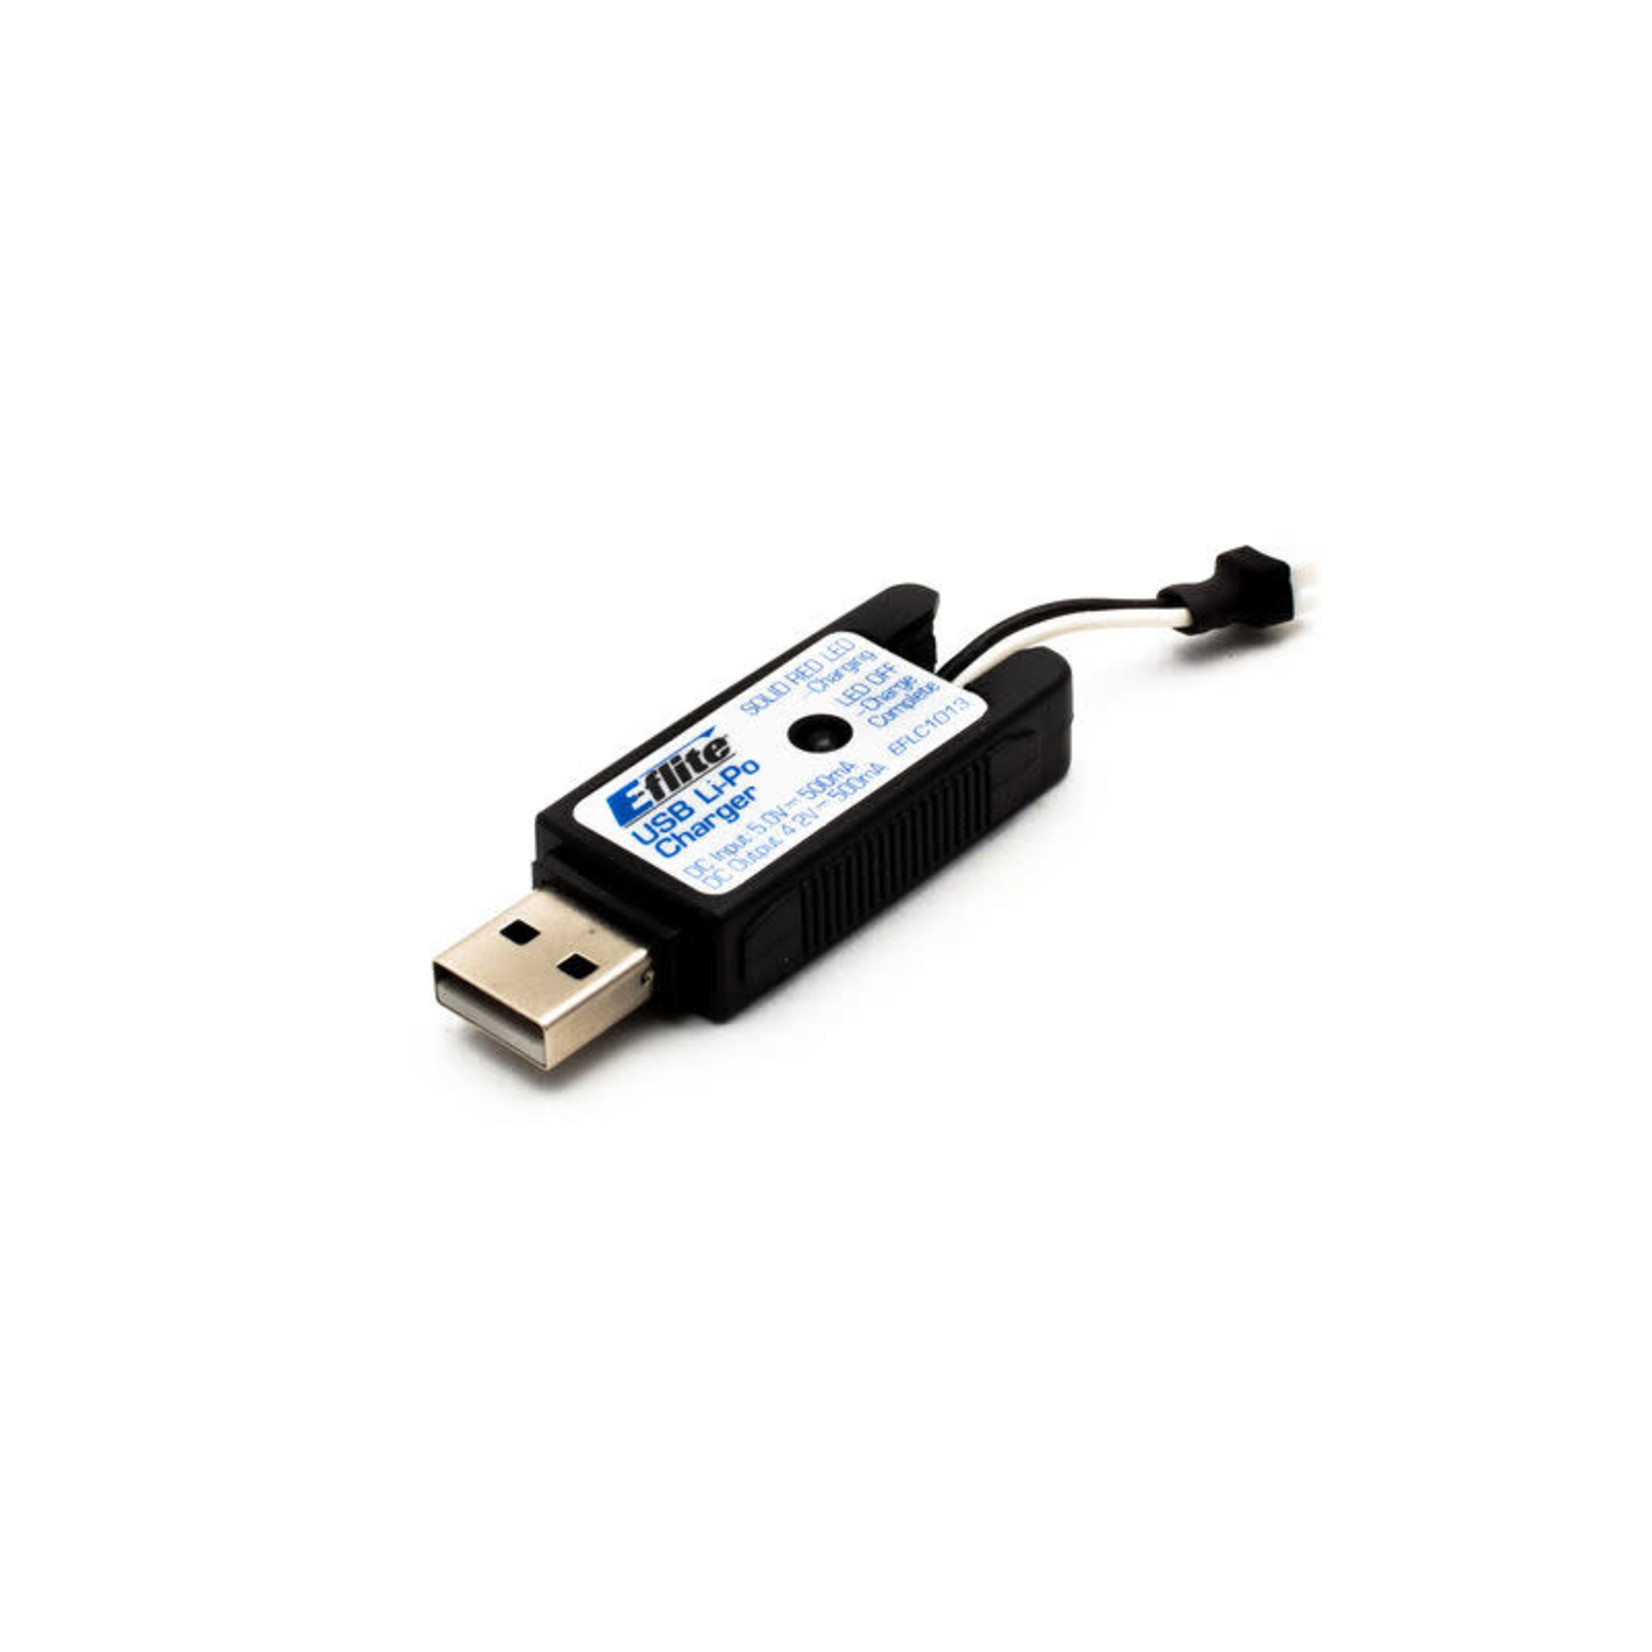 E-Flite E-flite 1S USB Li-Po Charger 500mAh High Current UMX